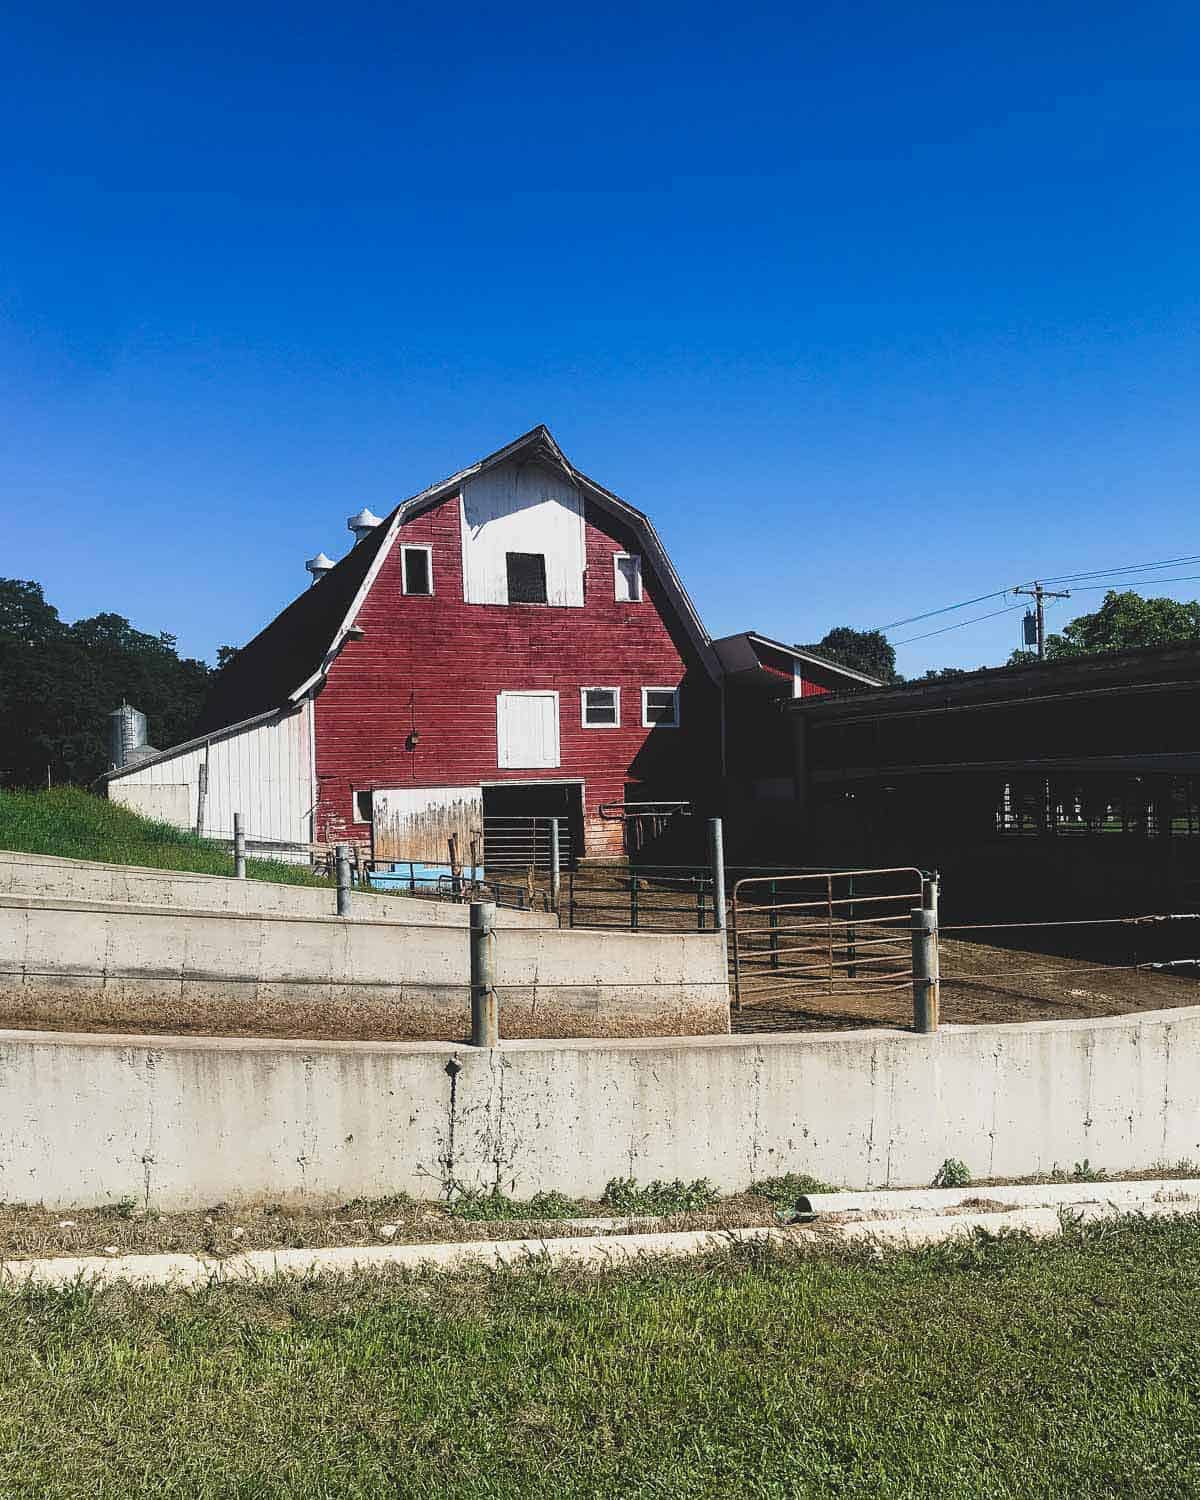 Coon Brothers Farm in Amenia, NY